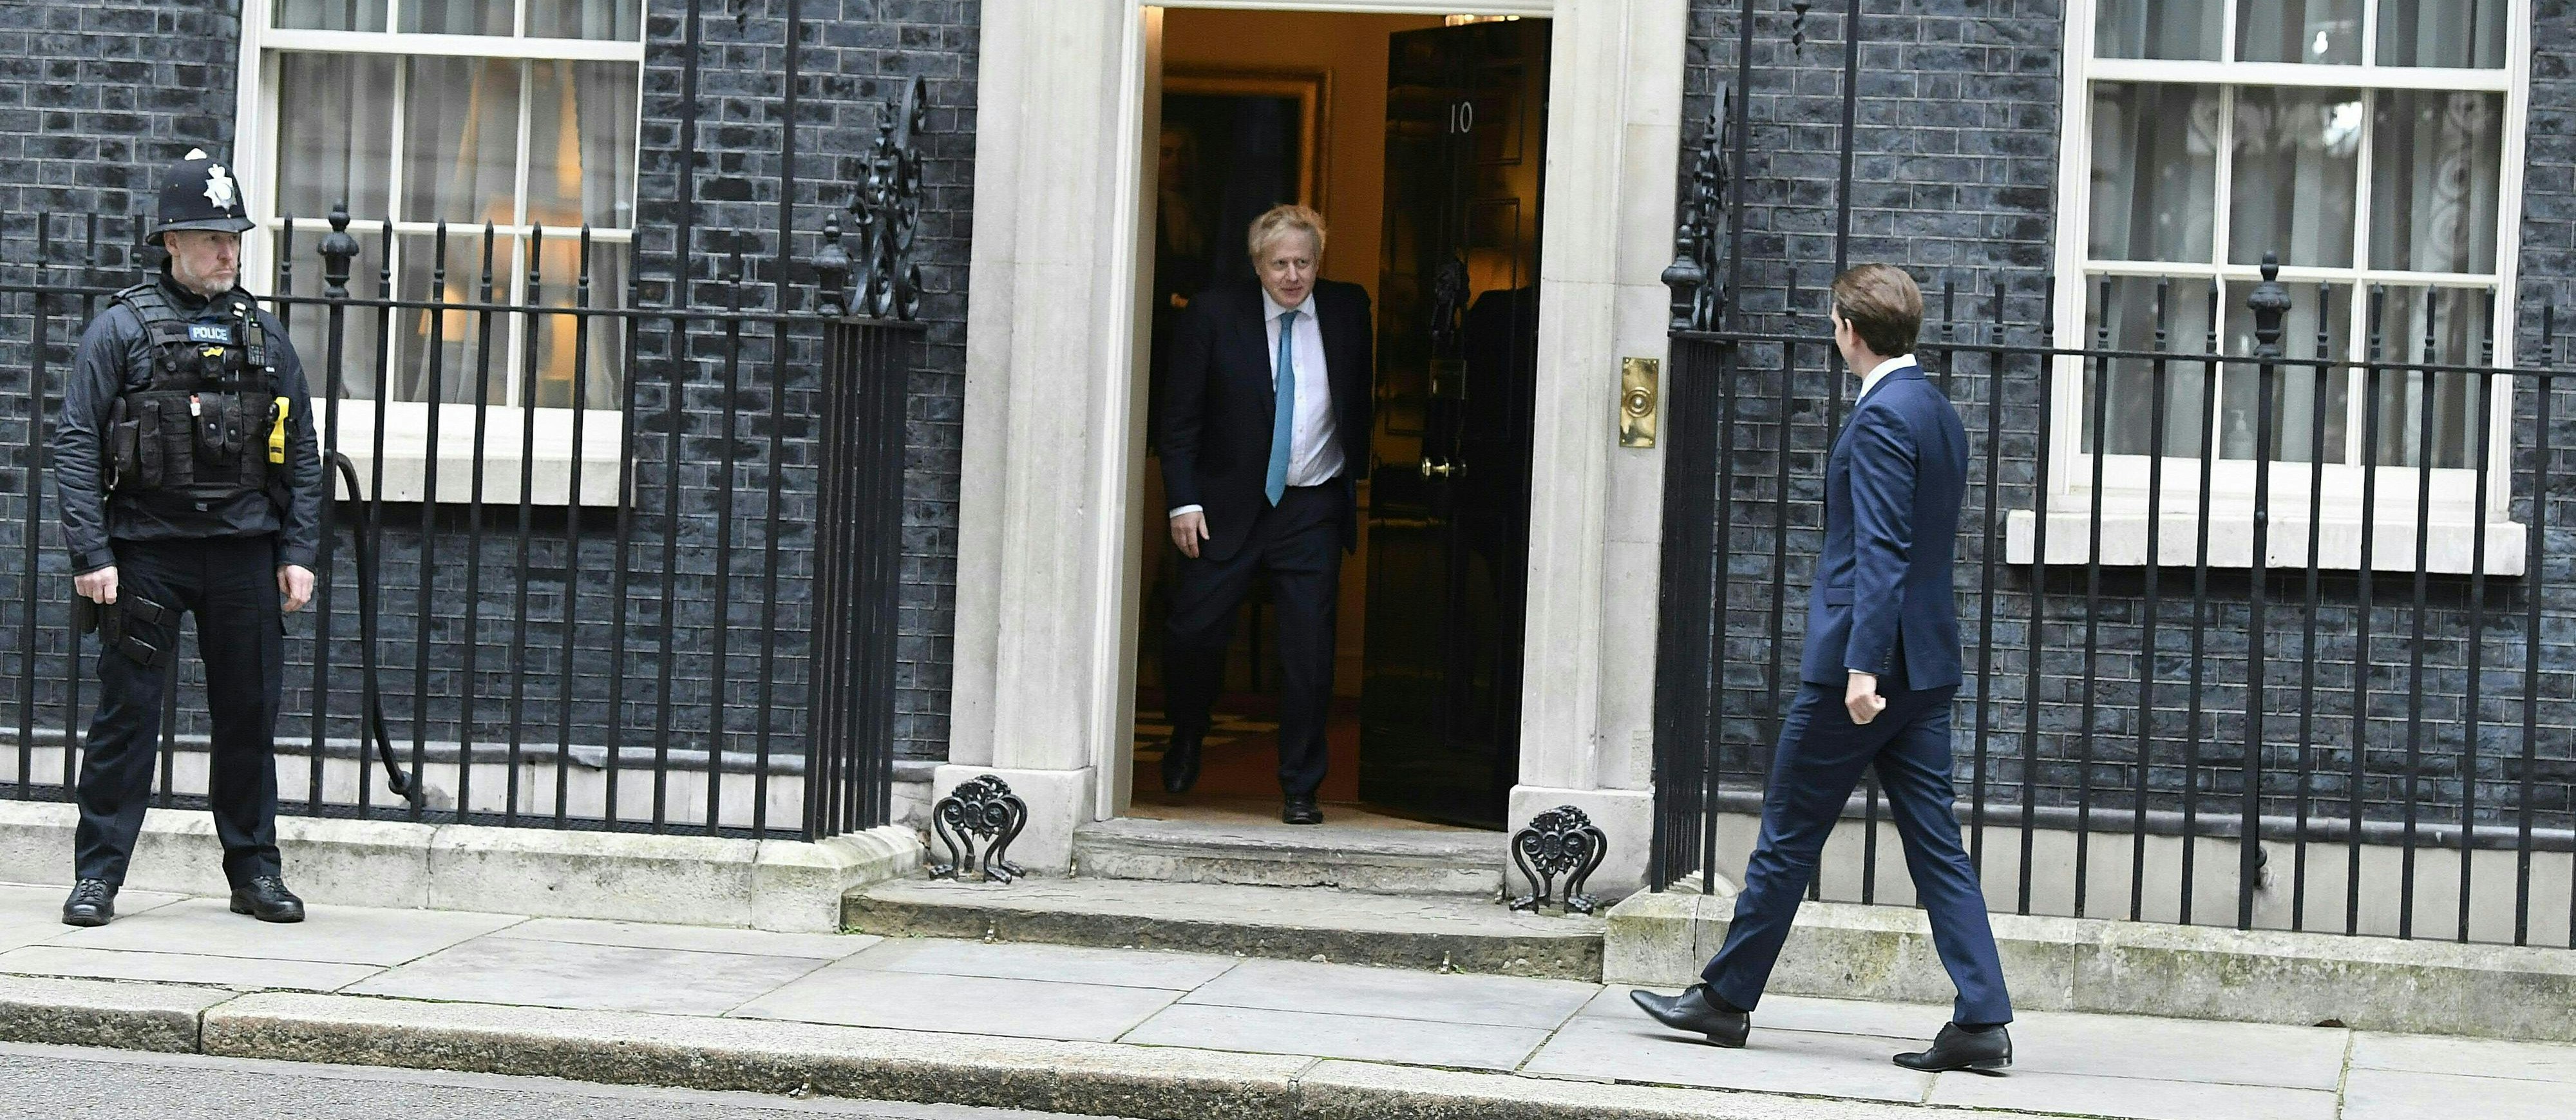 Österreichs Bundeskanzler Sebastian Kurz (r.) und der britische Premierminister Boris Johnson am 25. Februar 2020 im Rahmen eines offiziellen Treffens in London